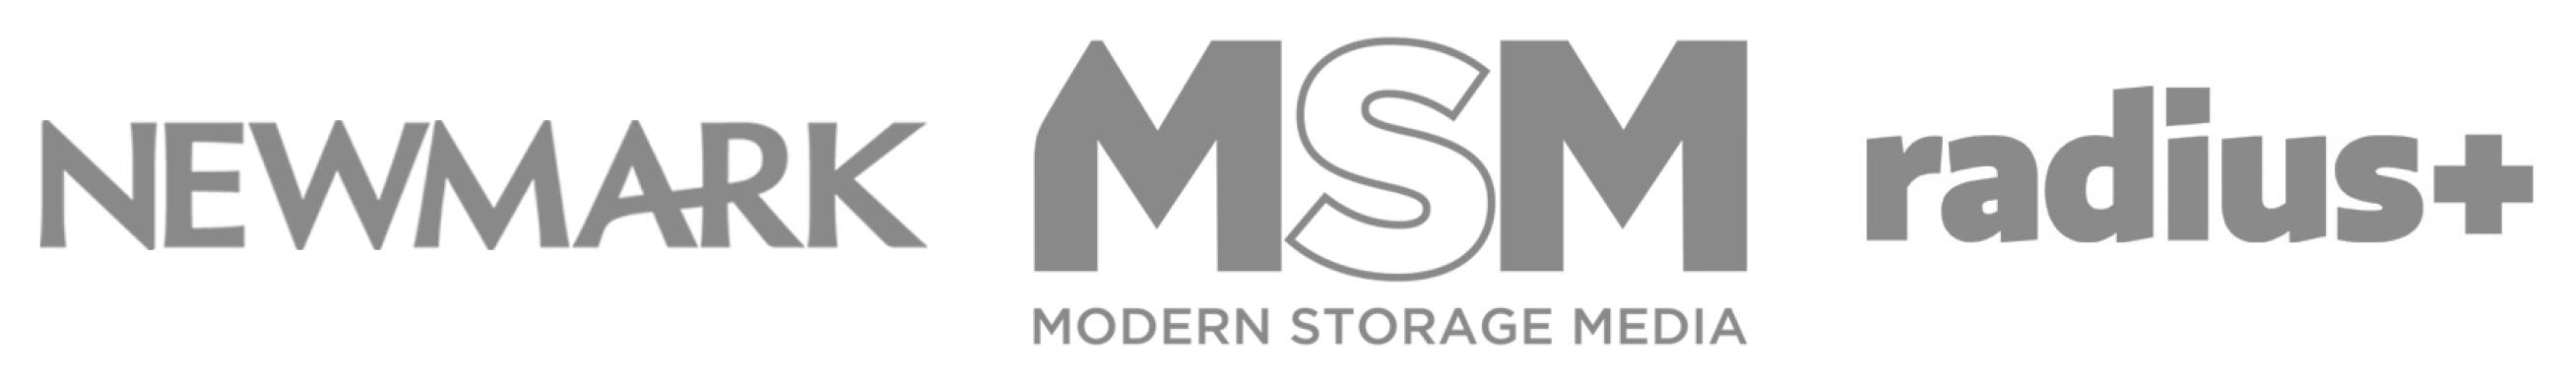 Newmark, MSM, radius plus logos